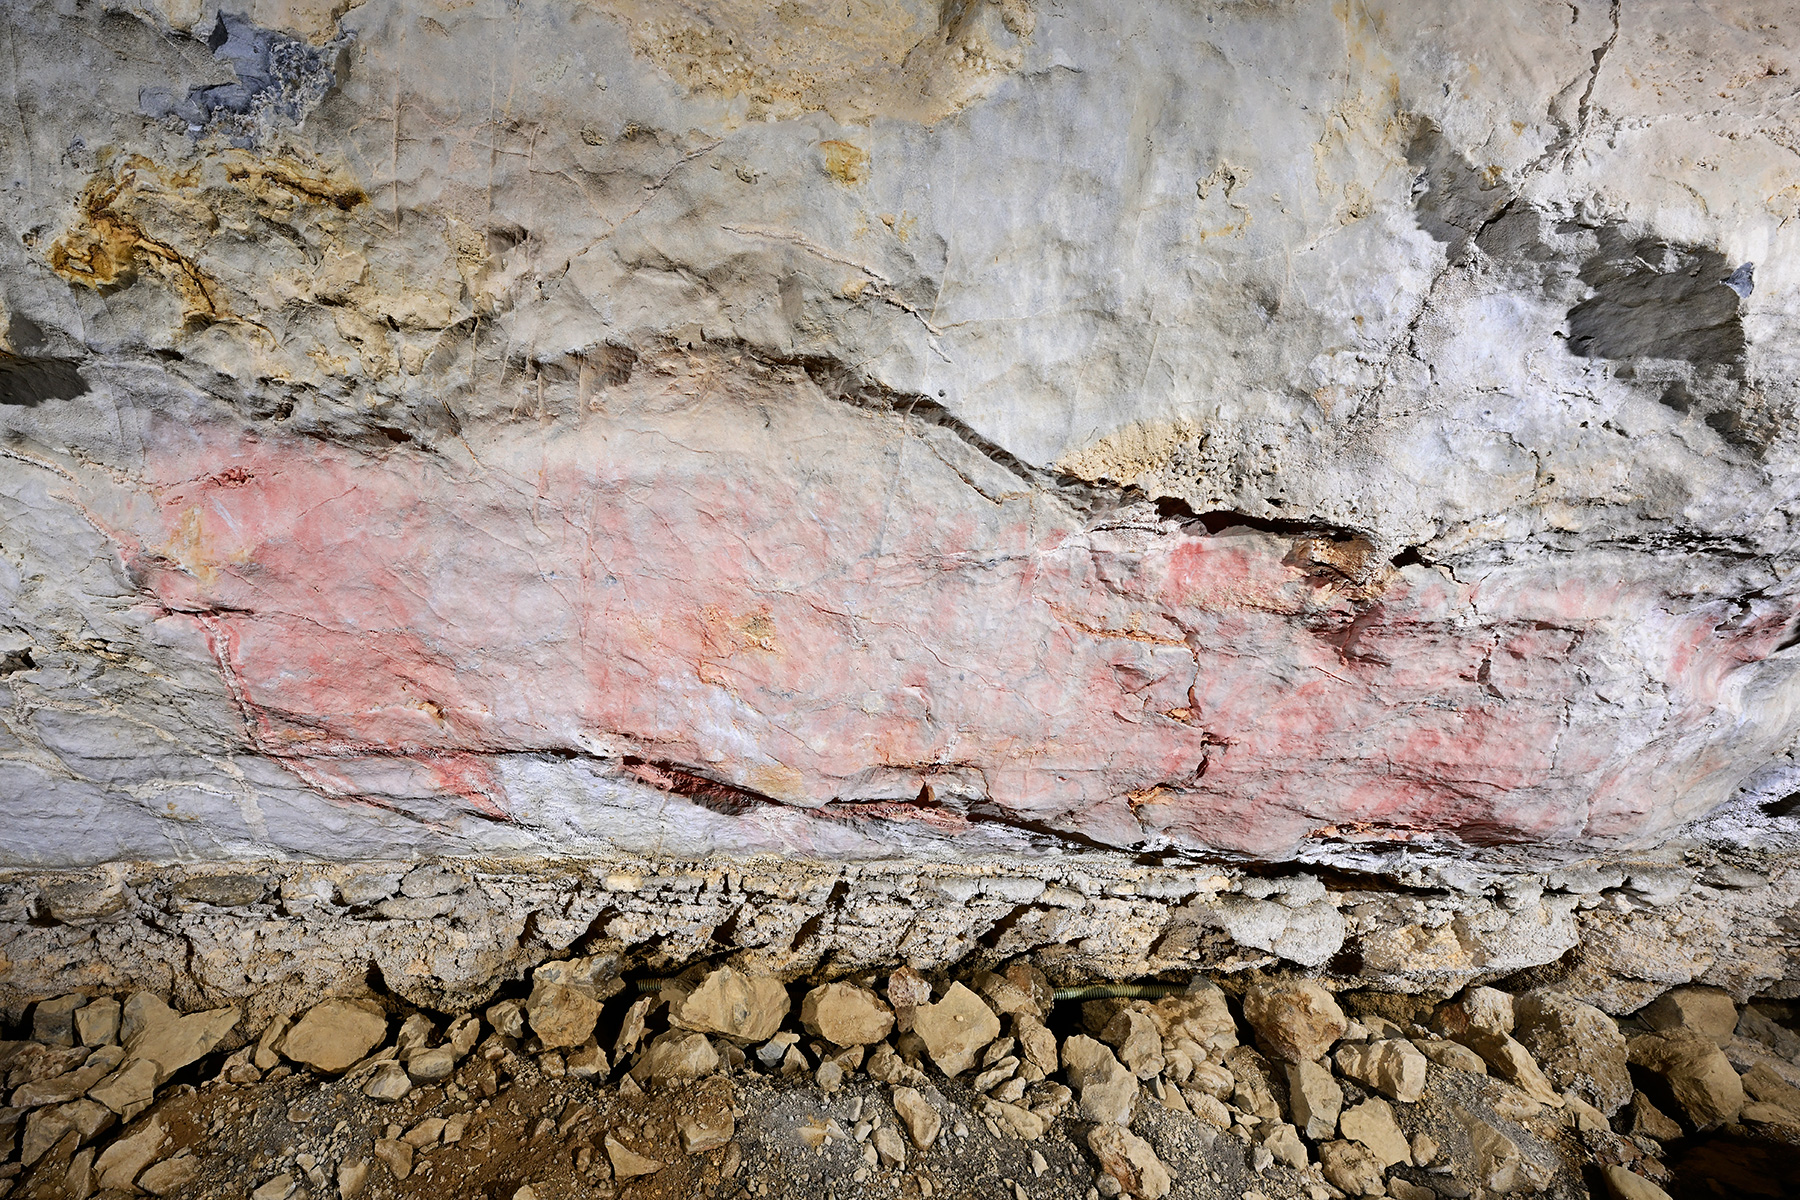 Grotte préhistorique de Bédeilhac (Ariège) - Peinture rupestre : ponctuations rouges peintes sur la paroi